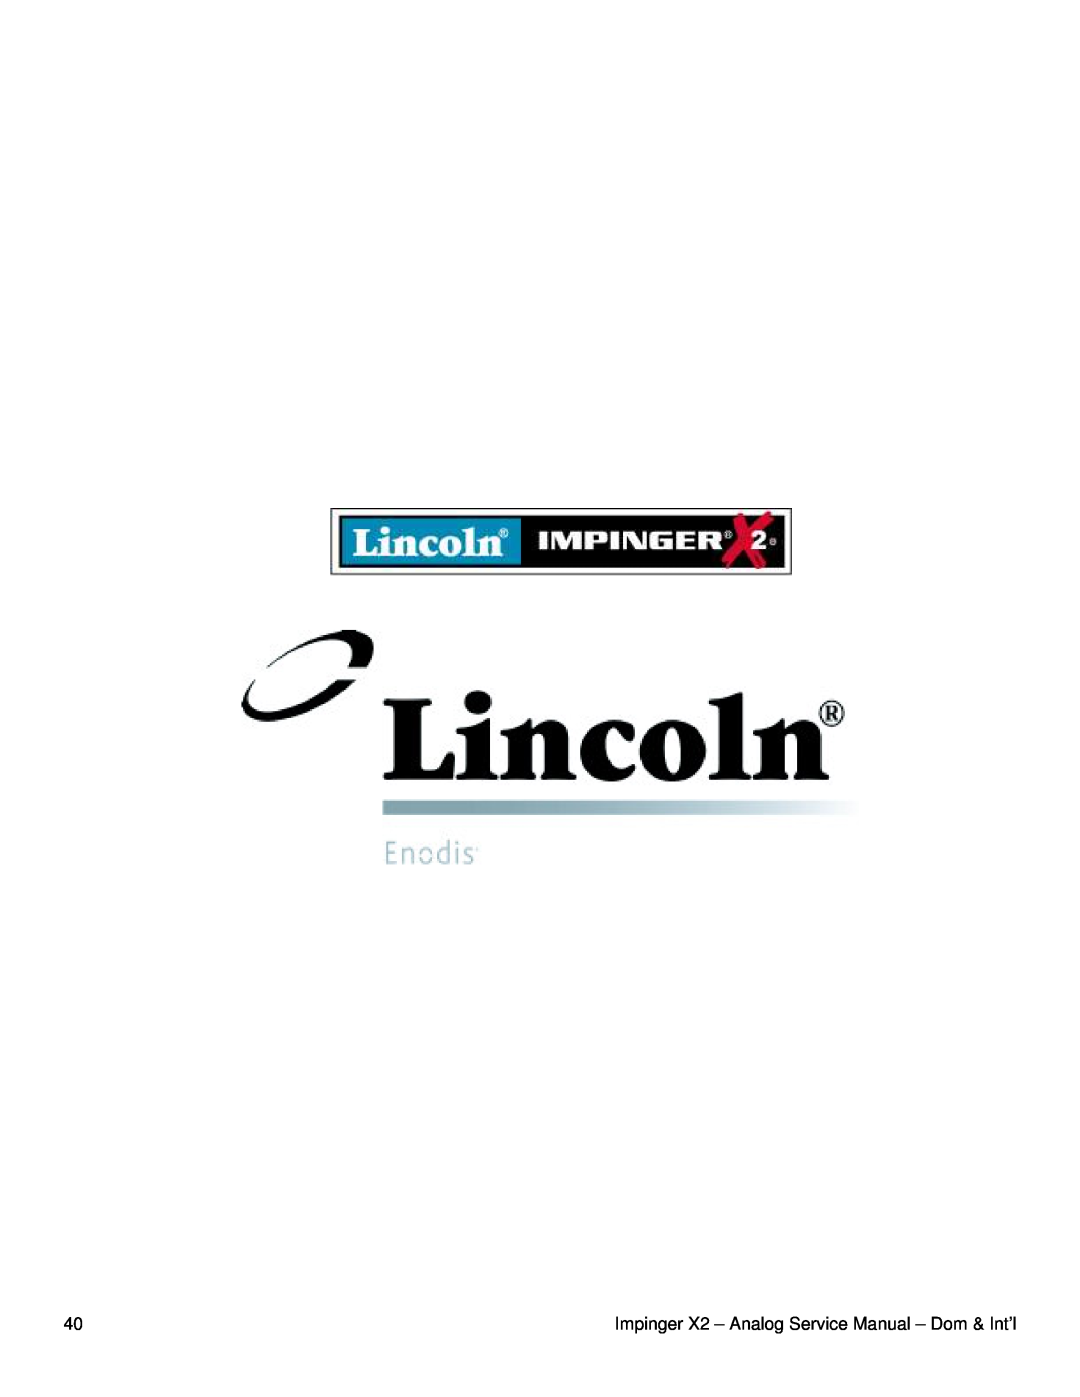 Lincoln 3262, 3270-2, 3240-2 service manual 